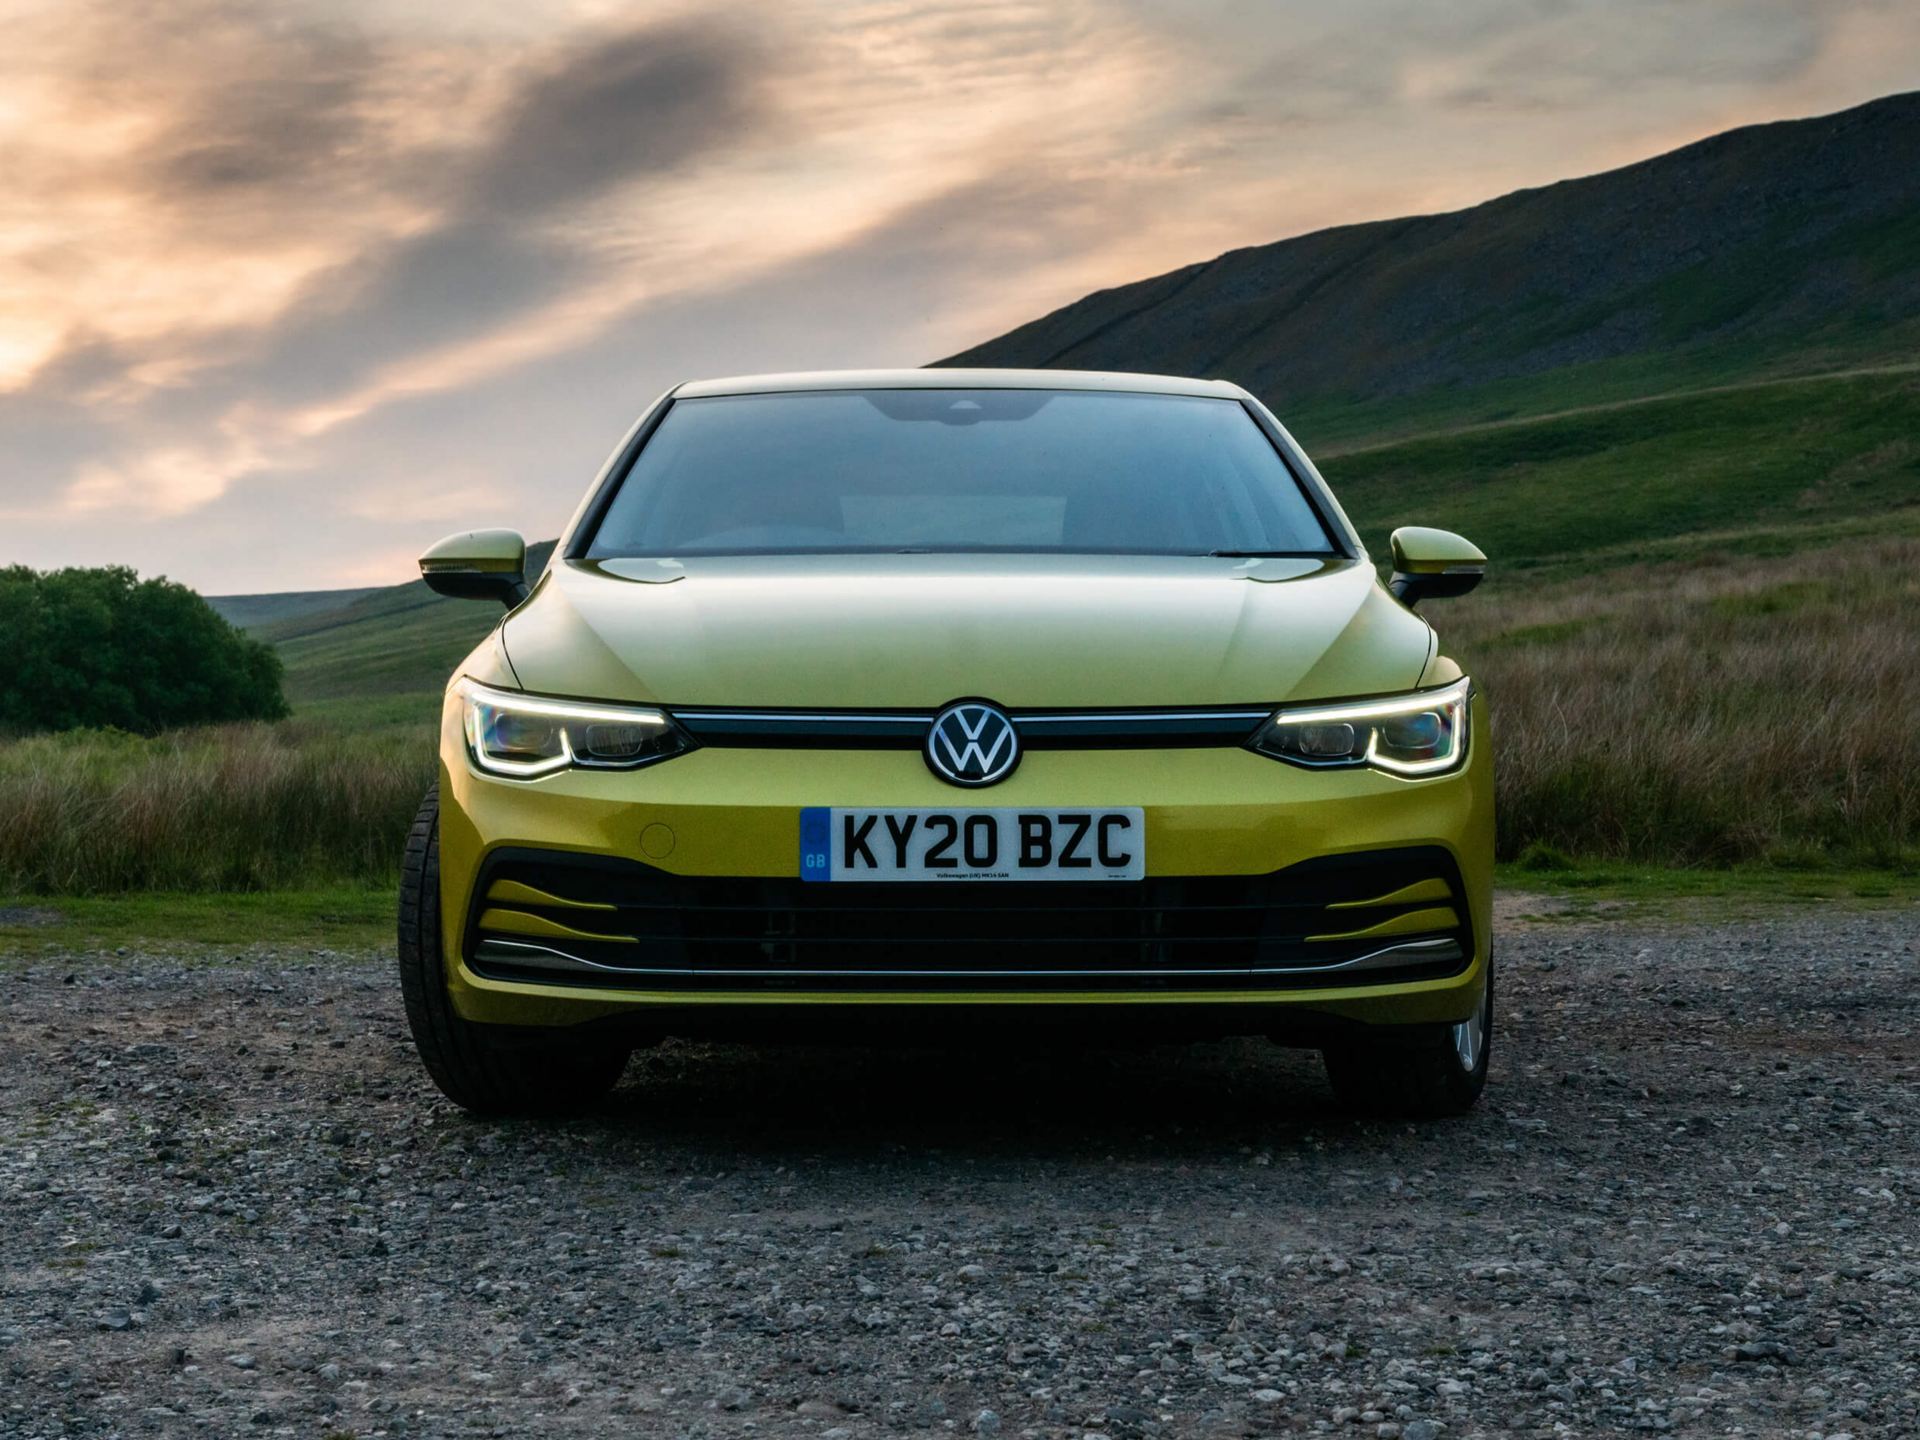 Front view of Yellow Volkswagen Golf